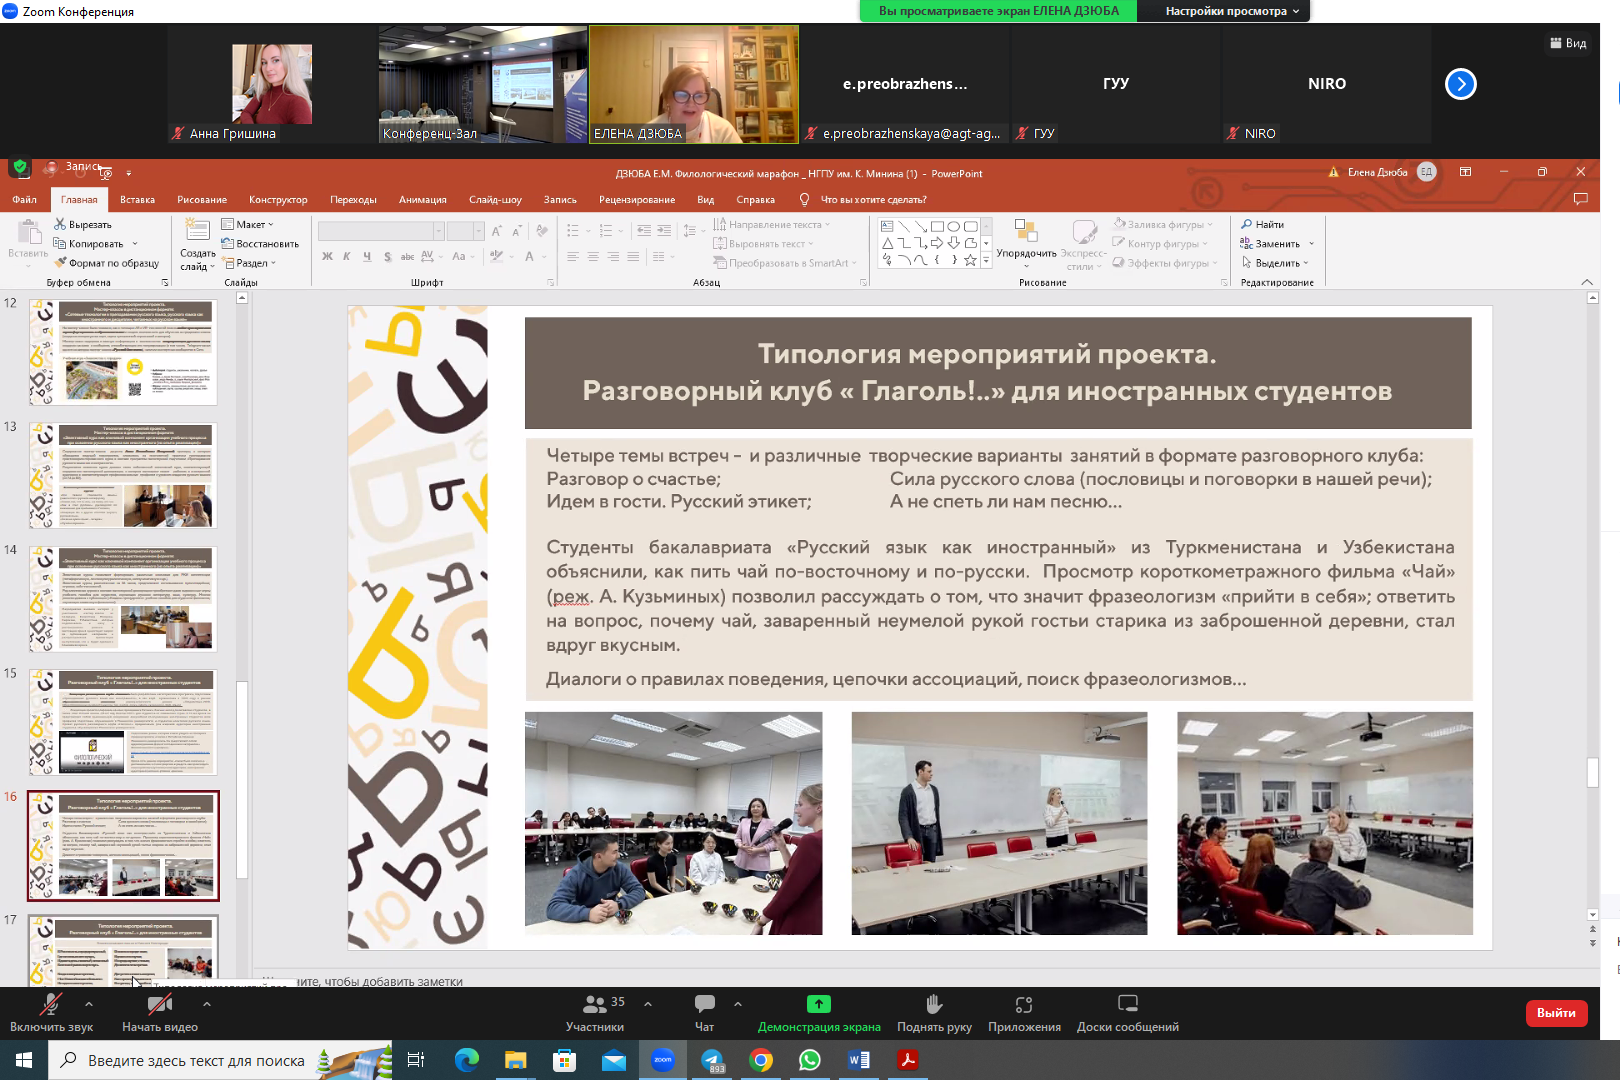 Ученые Мининского университета представили концепцию филологического образования на русском языке